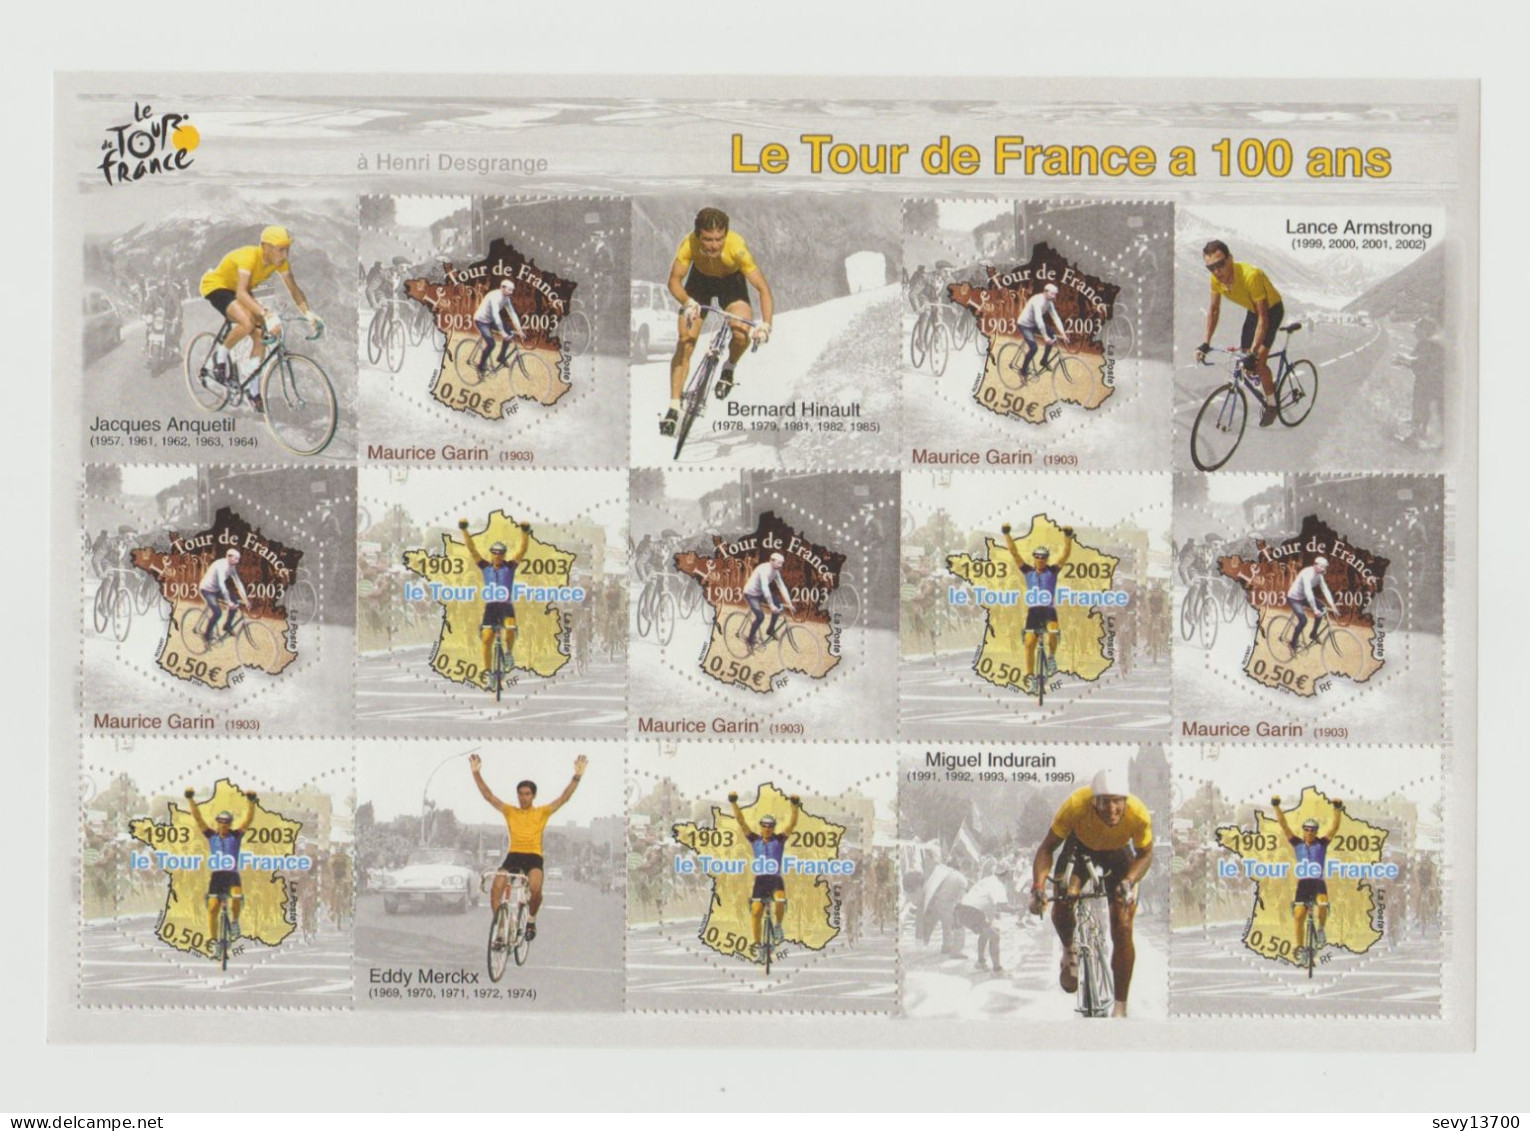 France Année 2003 Bloc Feuillet Yvert Tellier N° BF 59 Le Tour De France à 100 Ans - Mint/Hinged